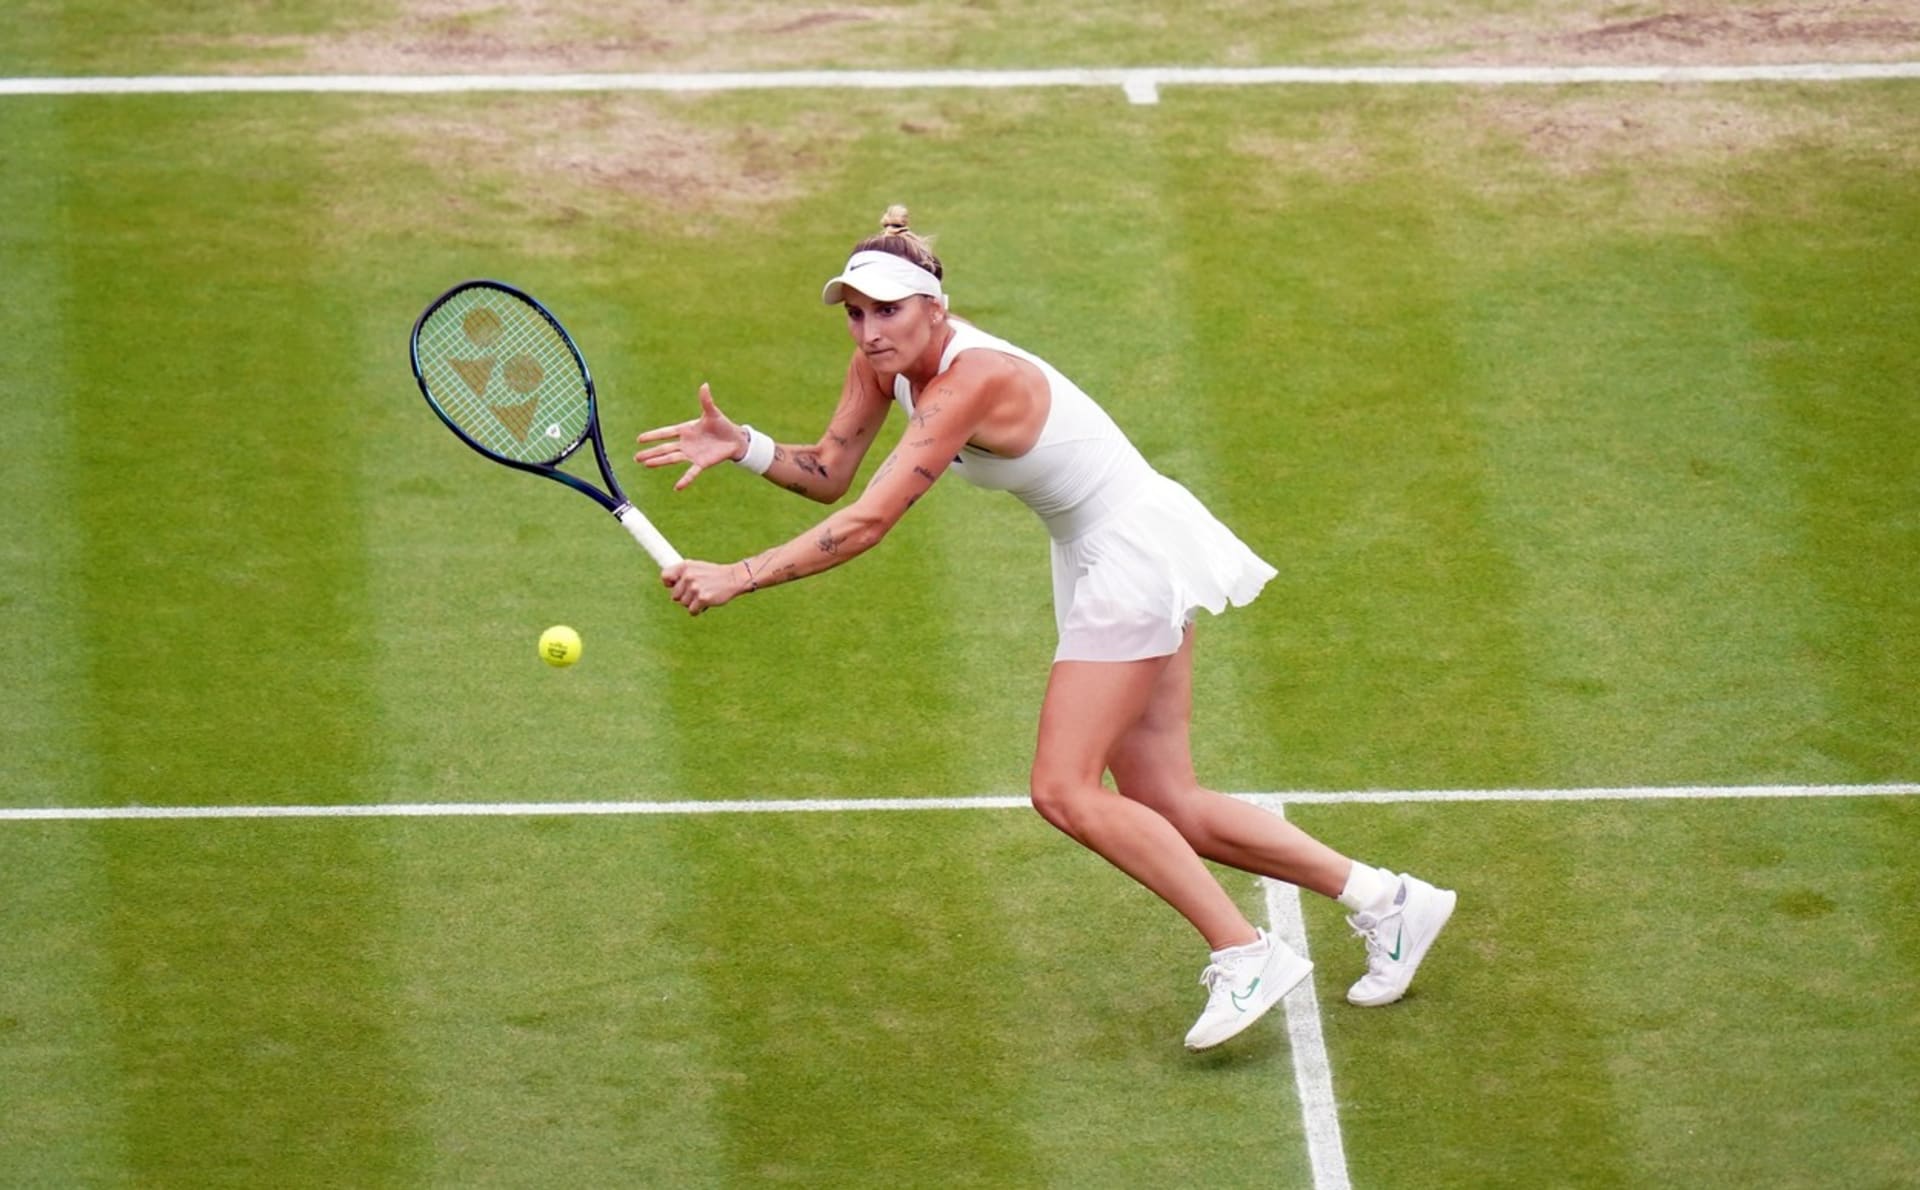 Vondroušová porazila Svitolinovou a zahraje si finále Wimbledonu.